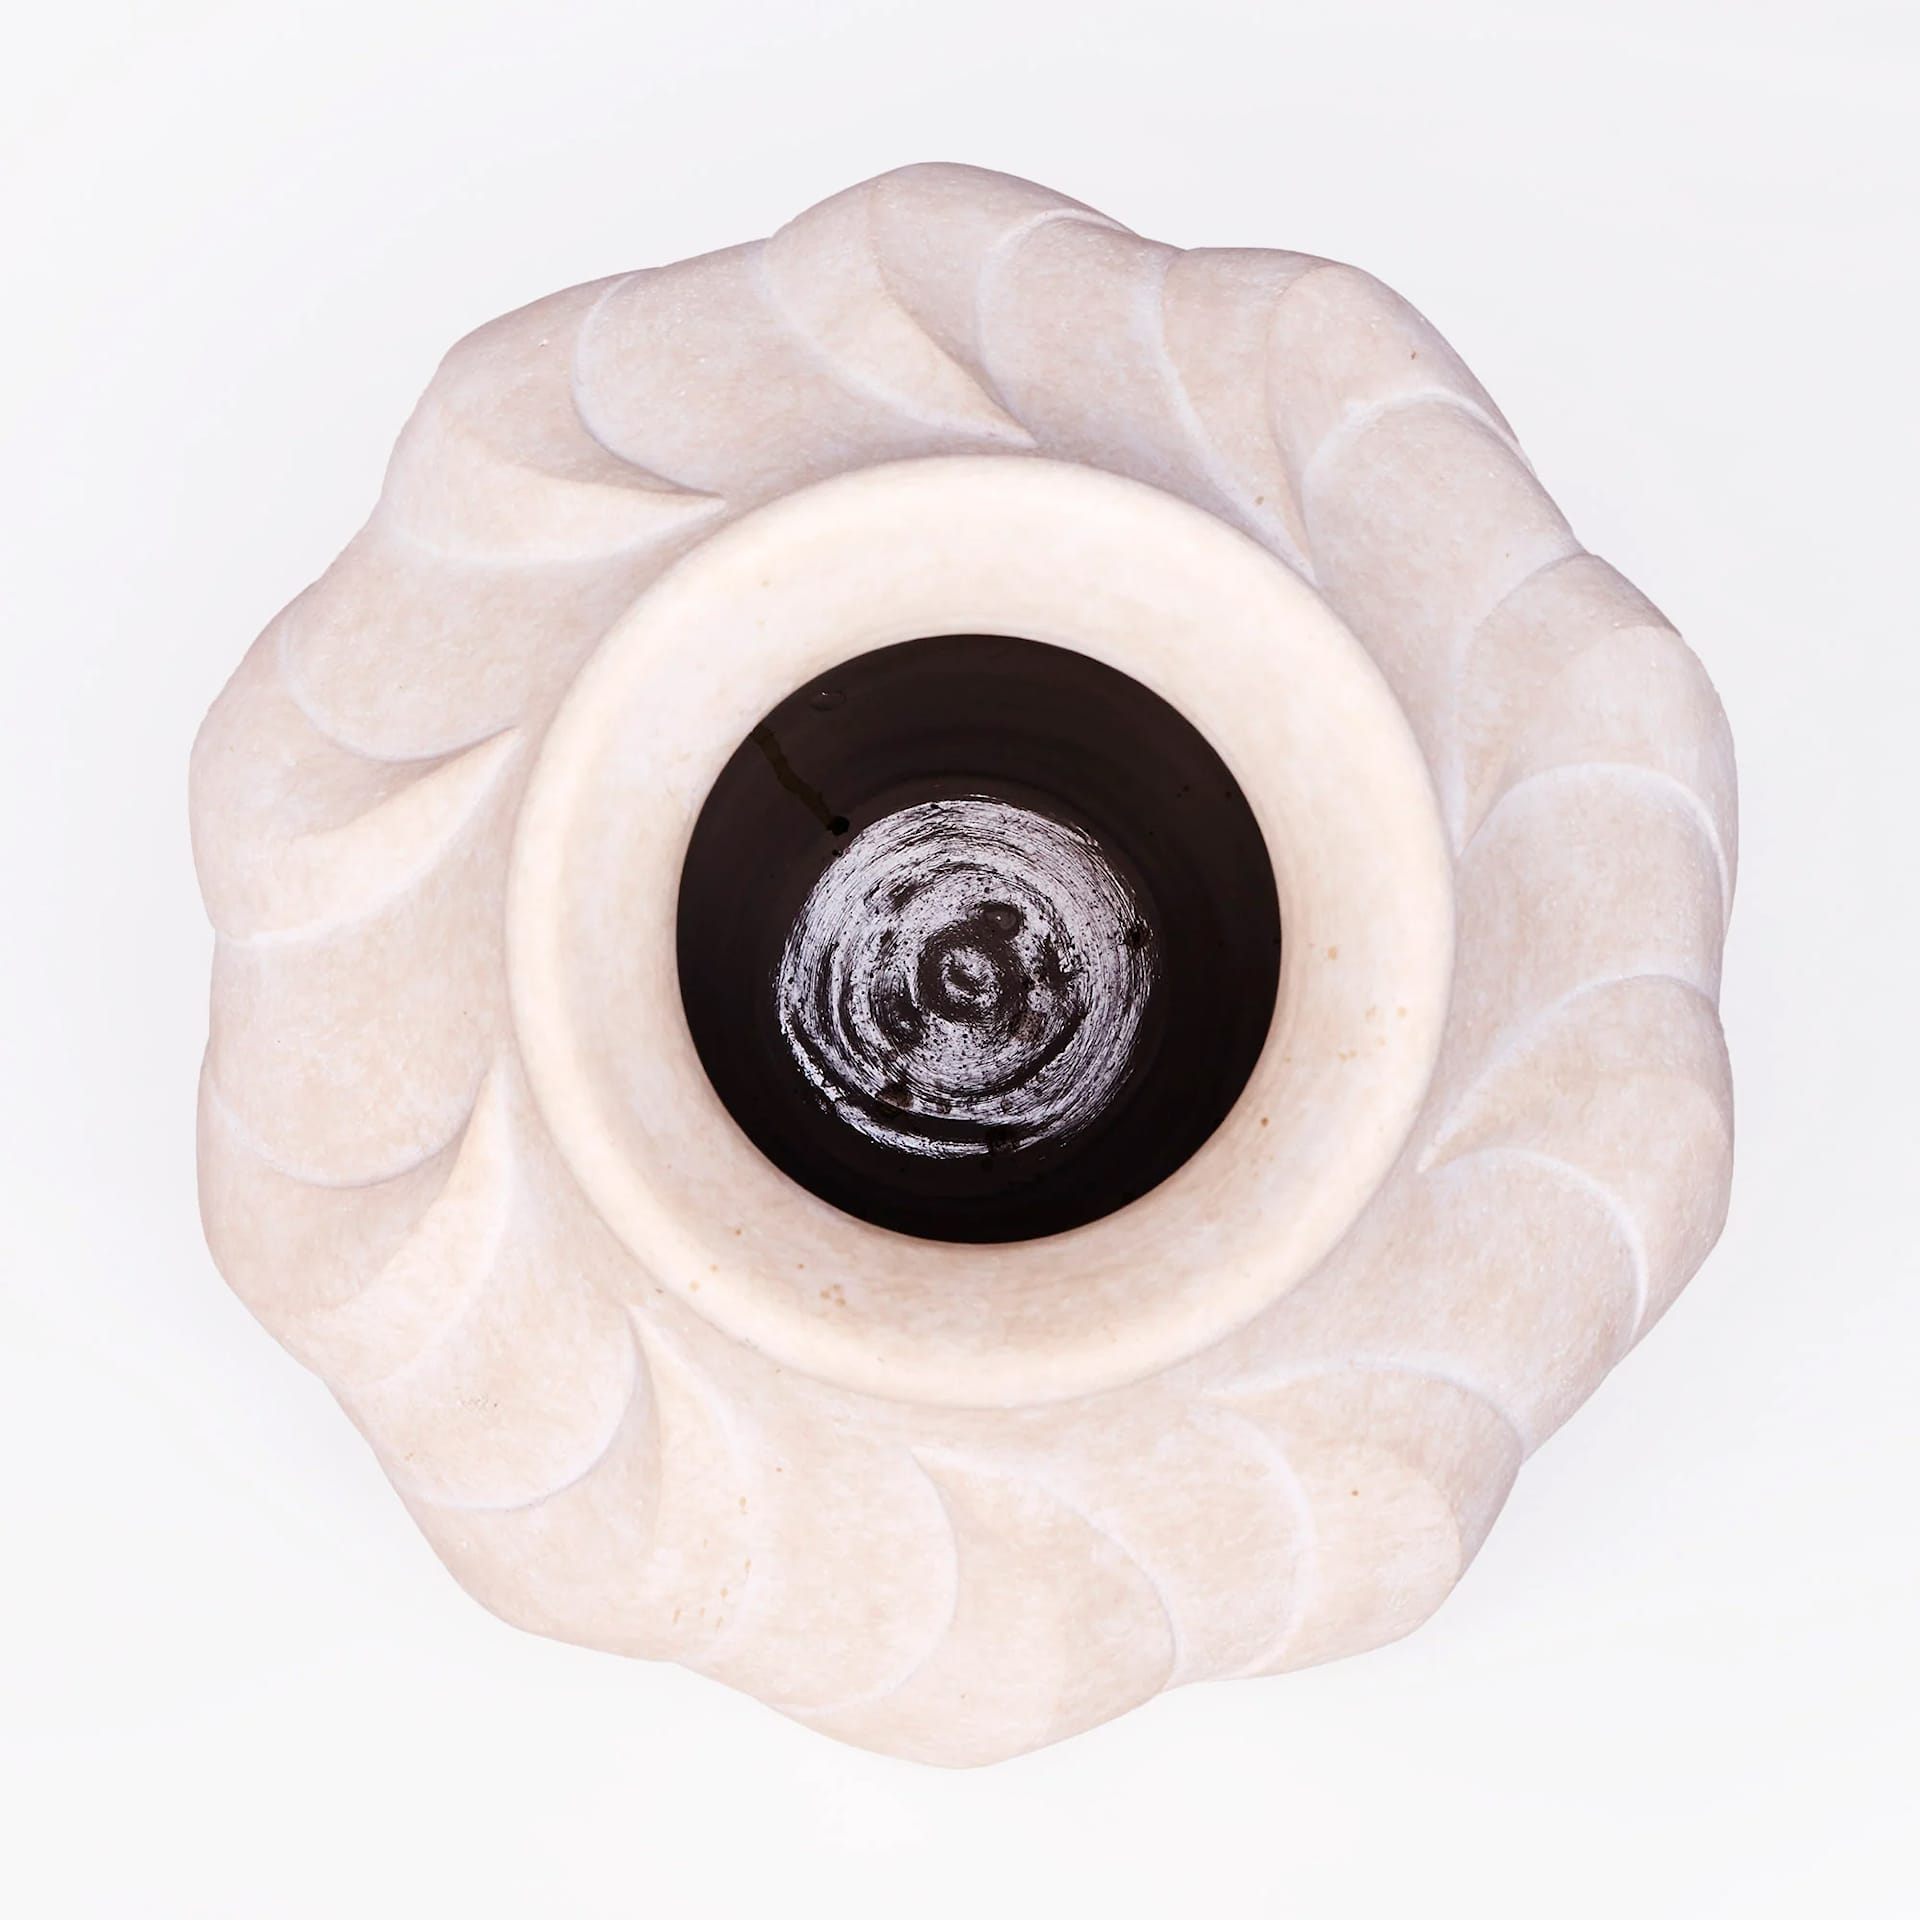 Swirl Vase Small - Dusty Deco - NO GA